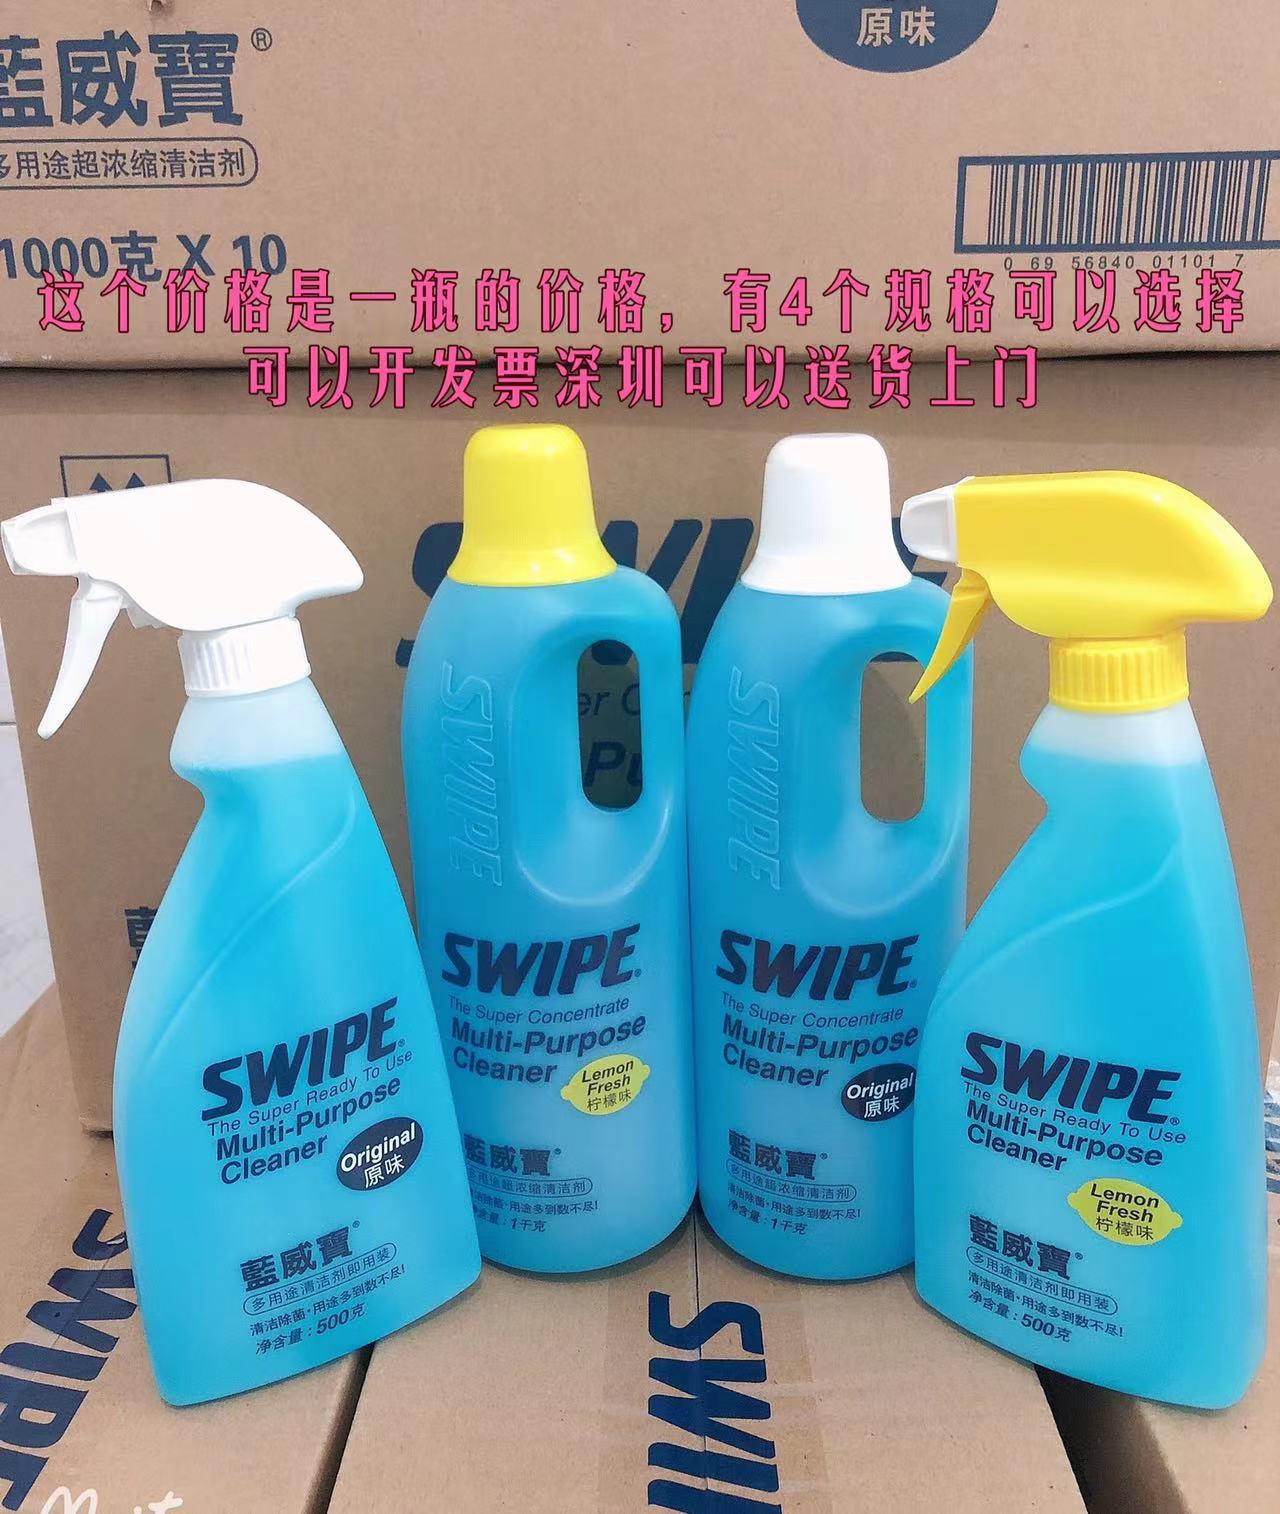 蓝威宝SWIPE 家用多用途超浓缩清洁剂厨房油烟柠檬味原味500ML,1L